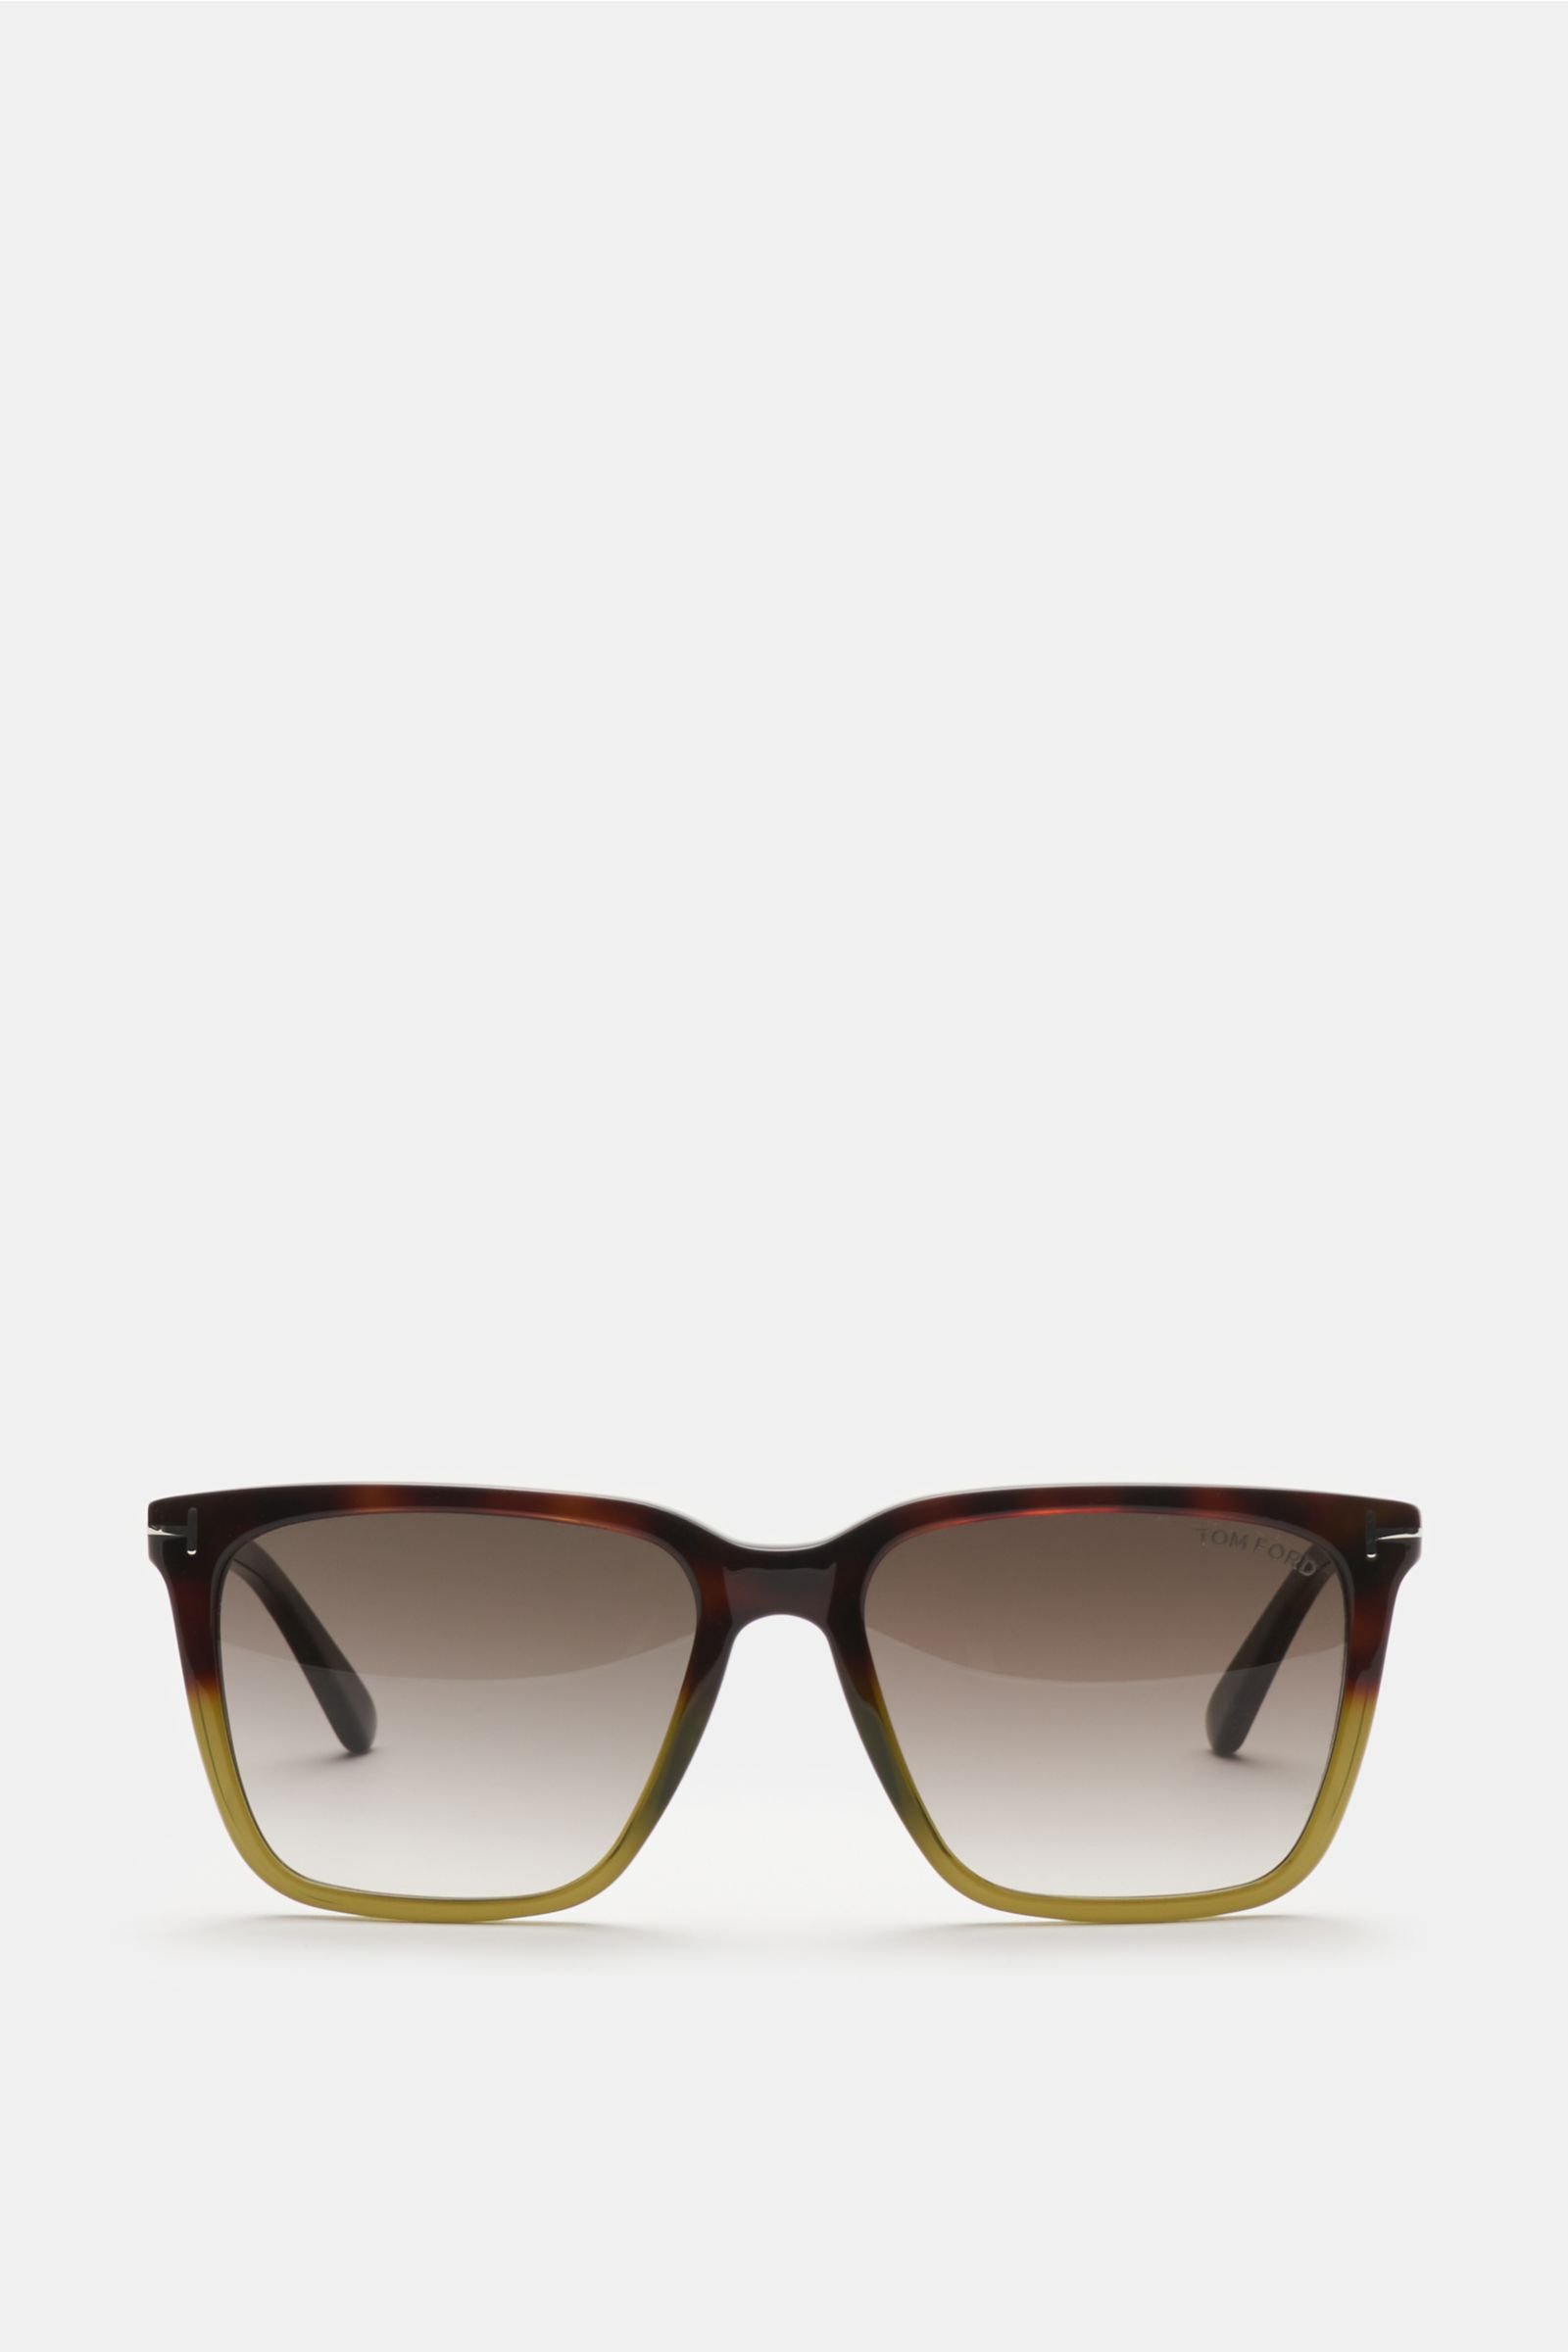 Sunglasses 'Garett' dark brown/yellow 